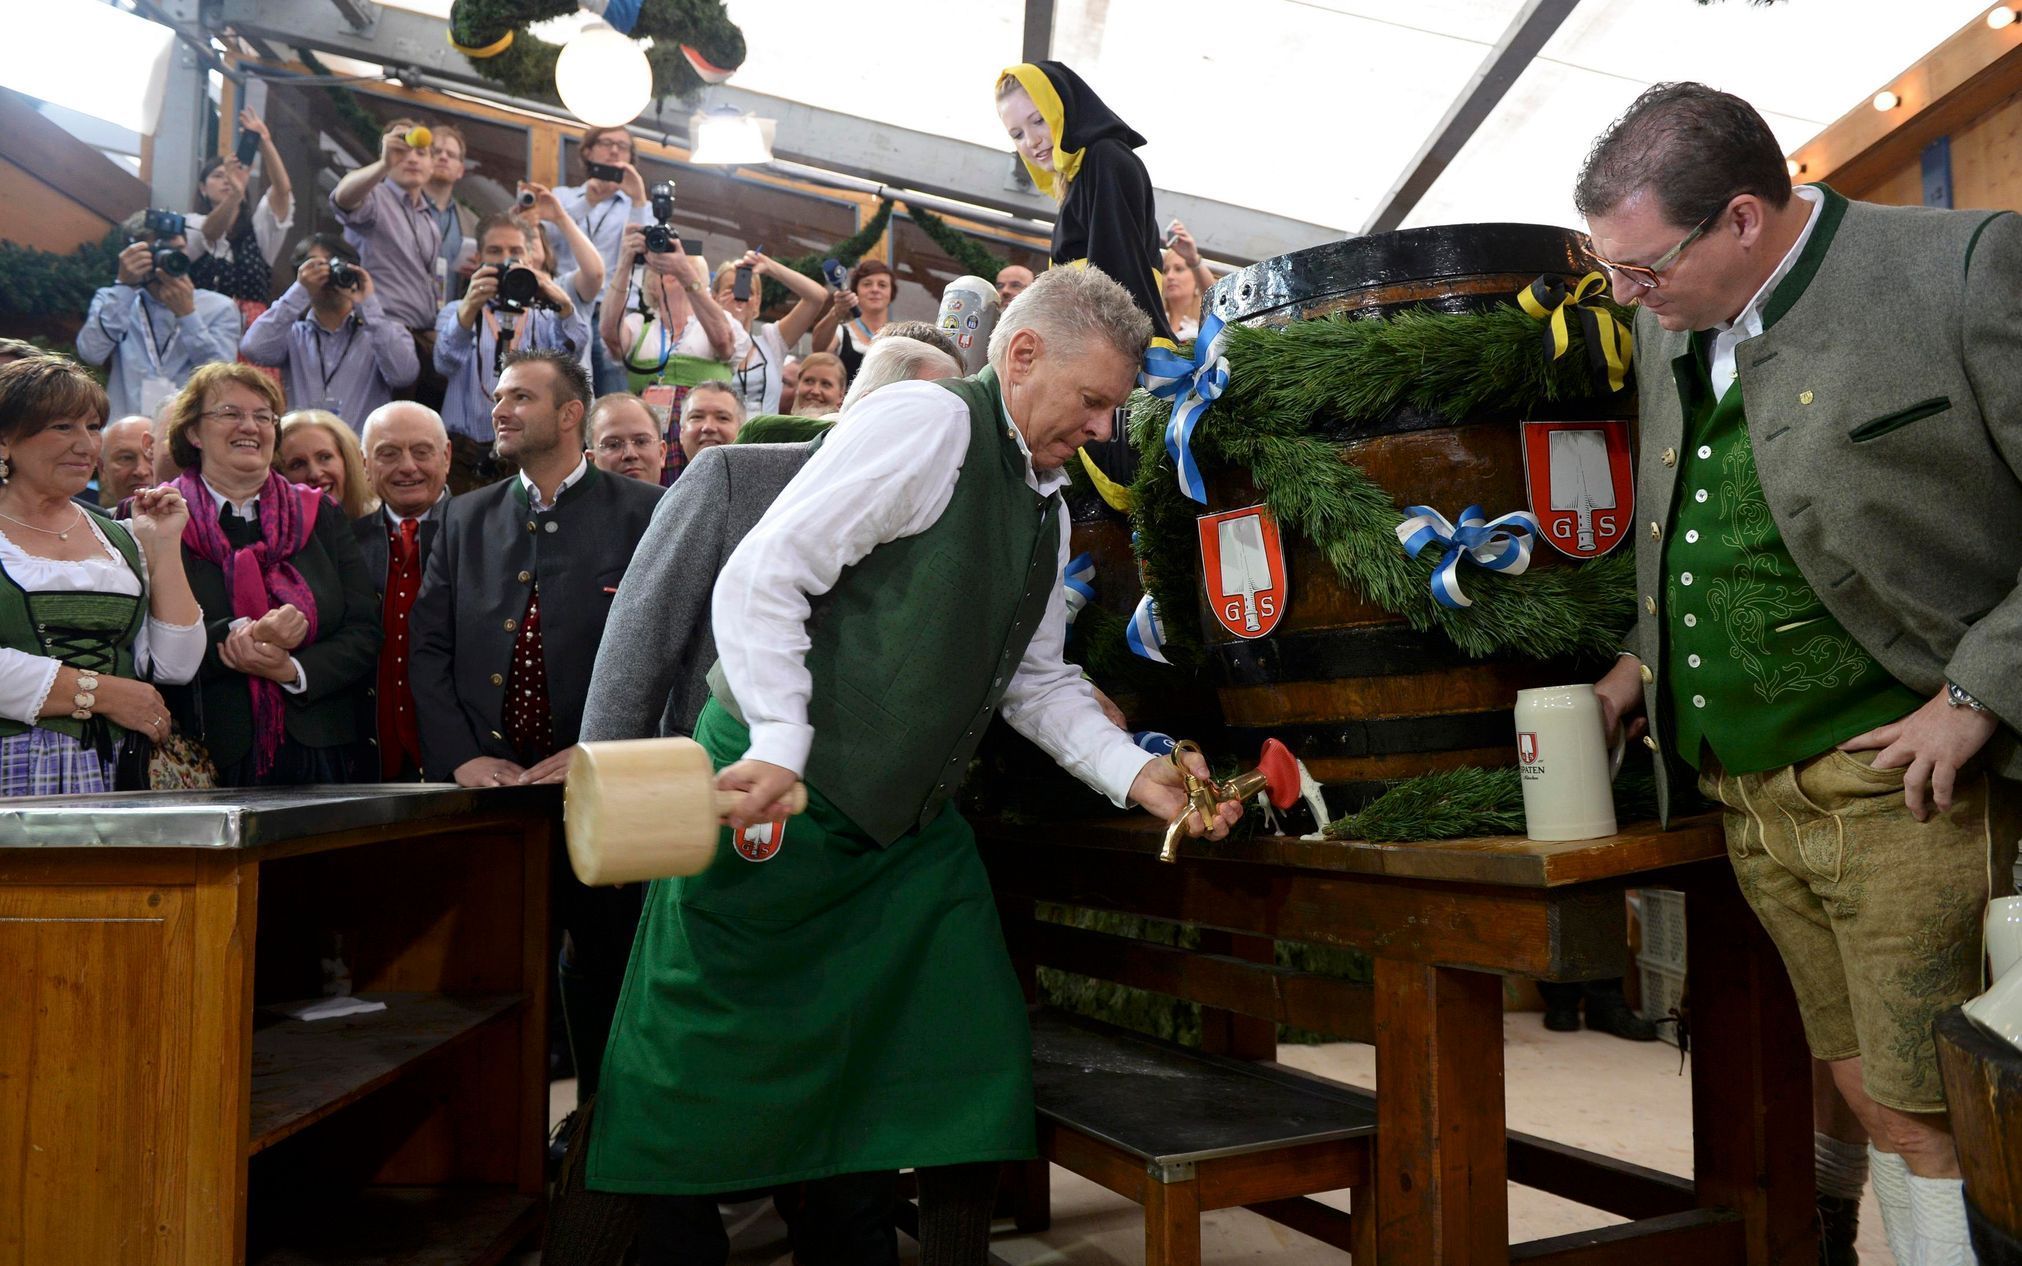 Nově zvolený primátor Dieter Reiter naráží první sud piva na Oktoberfestu.